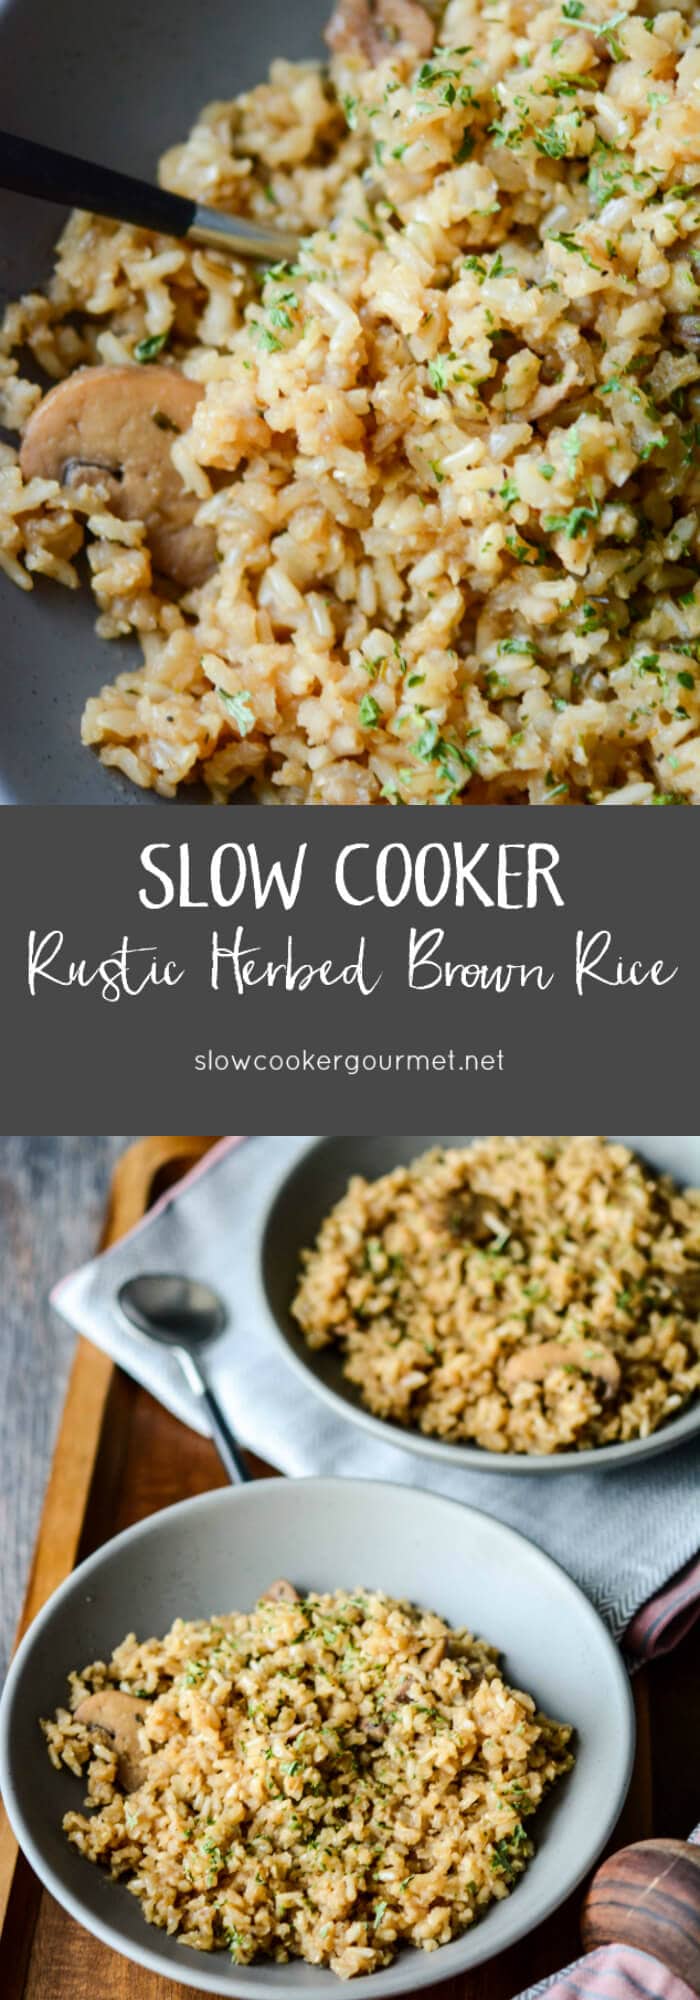 Slow Cooker Rustic Herbed Brown Rice - Slow Cooker Gourmet